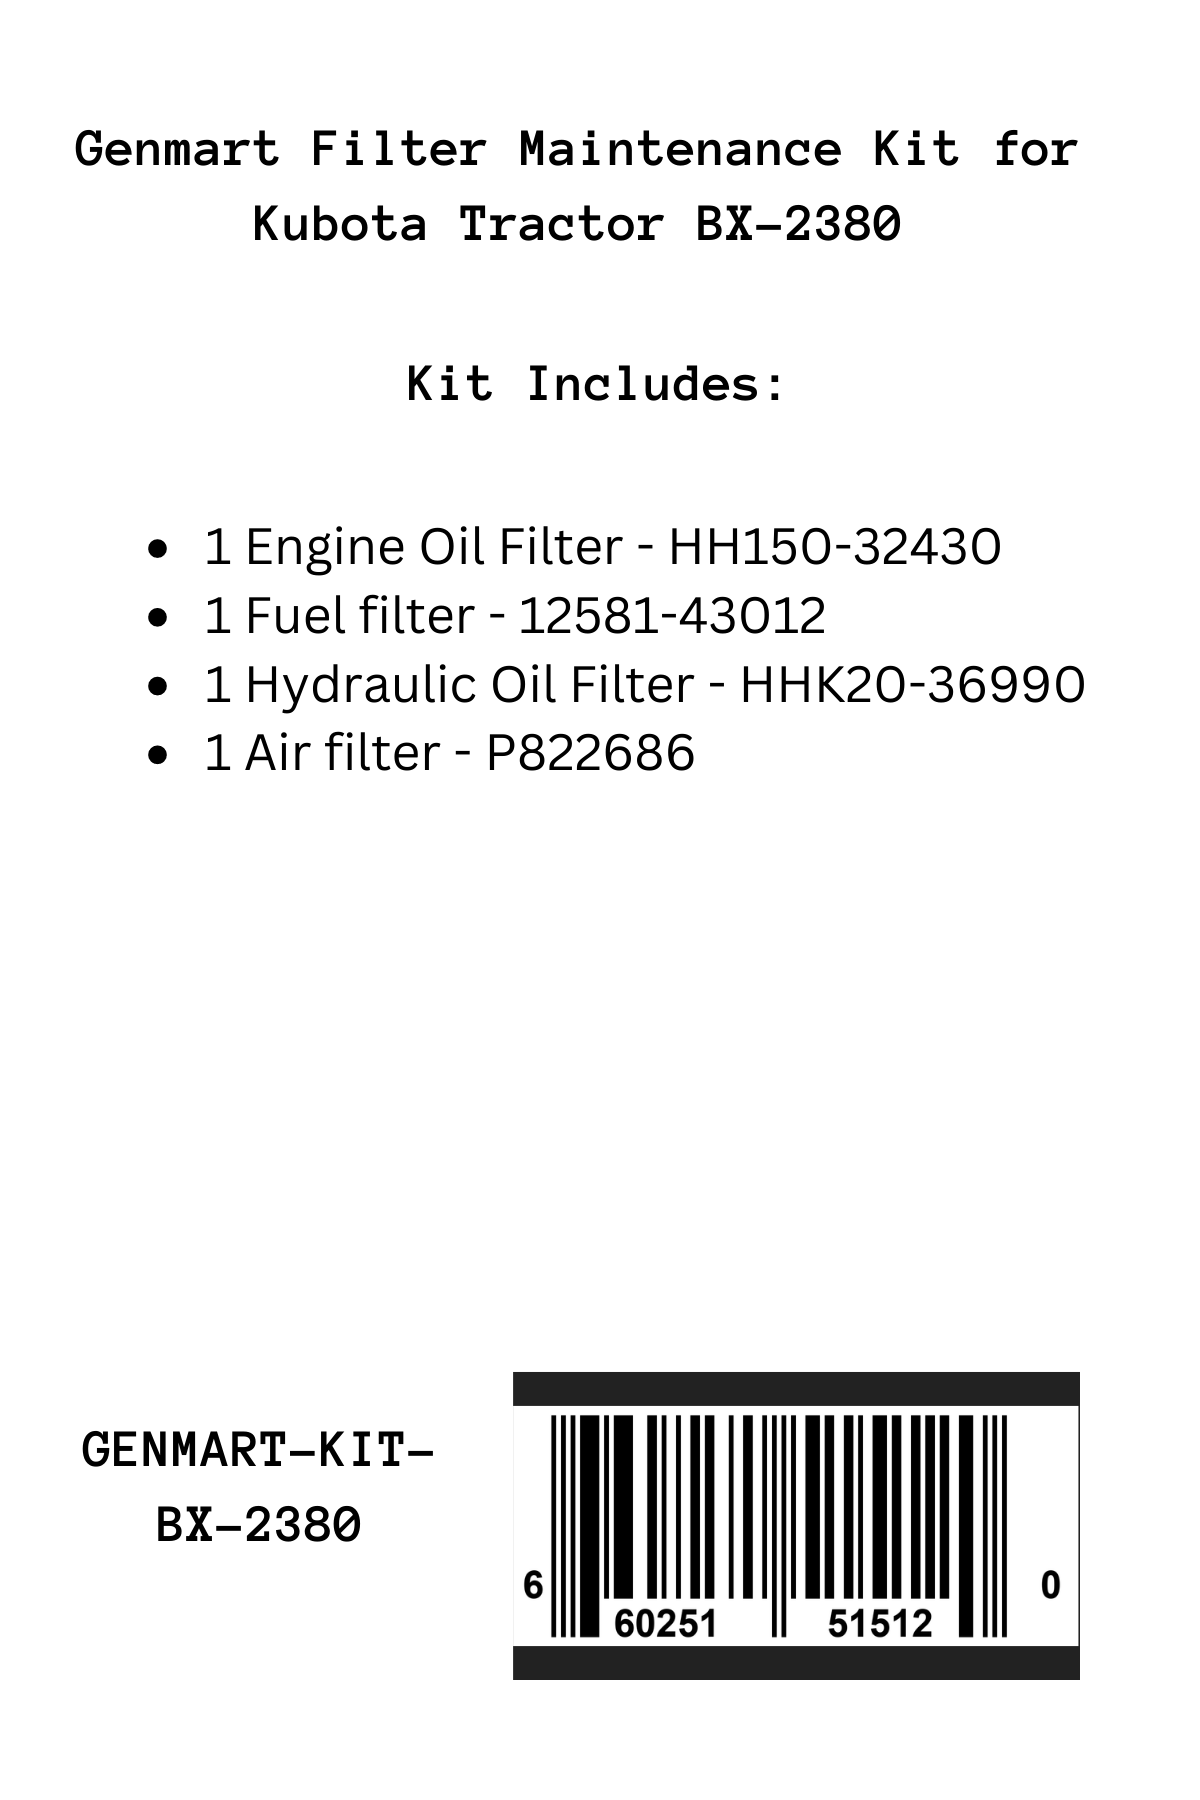 Genmart Maintenance Kit for Kubota Tractor BX-2380